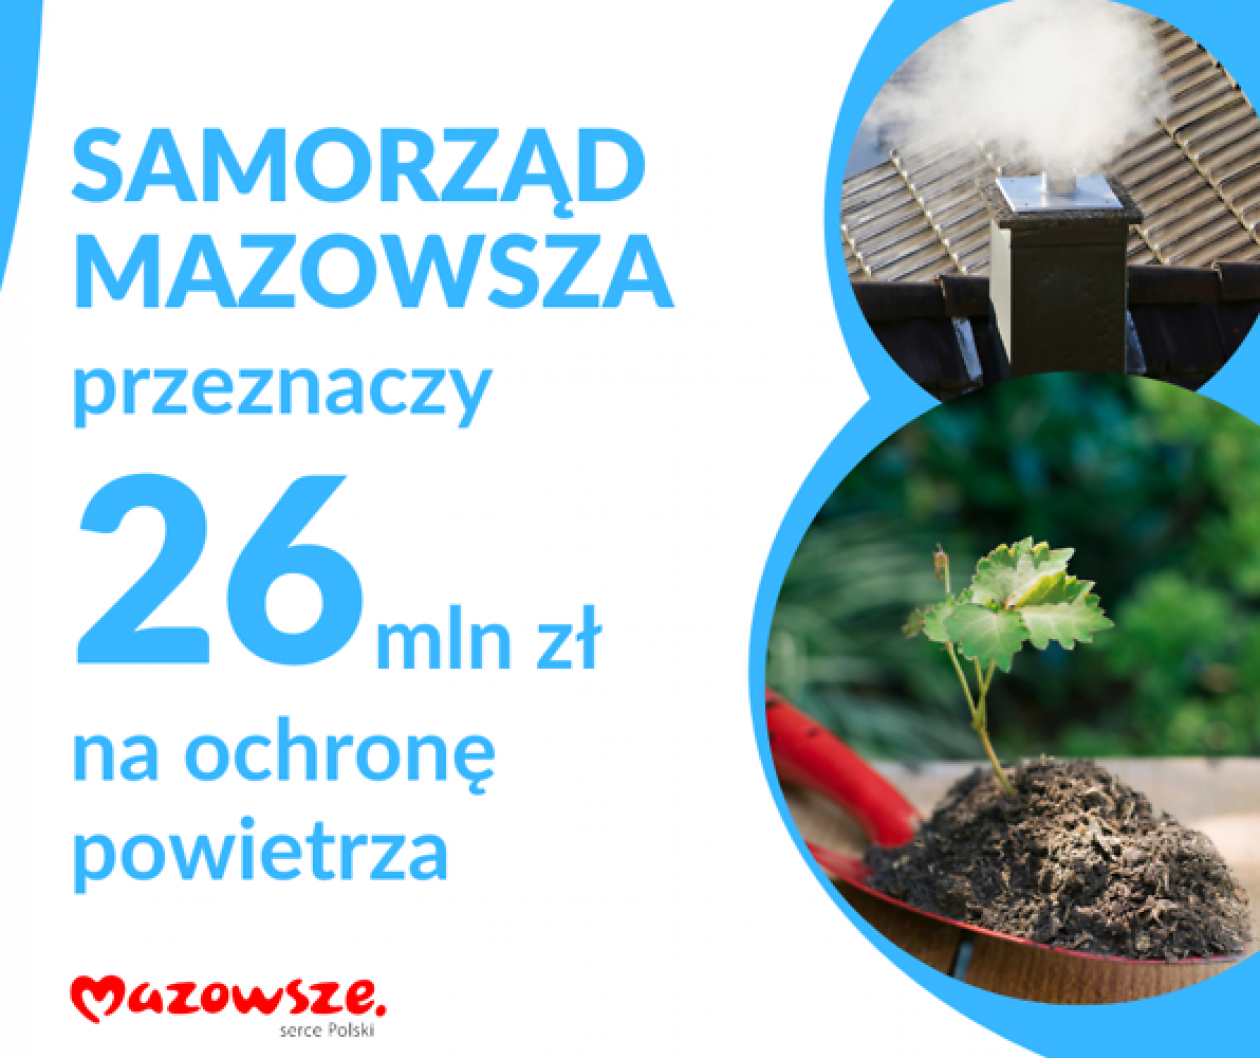 Ochrona powietrza i stacje meteorologiczne na Mazowszu